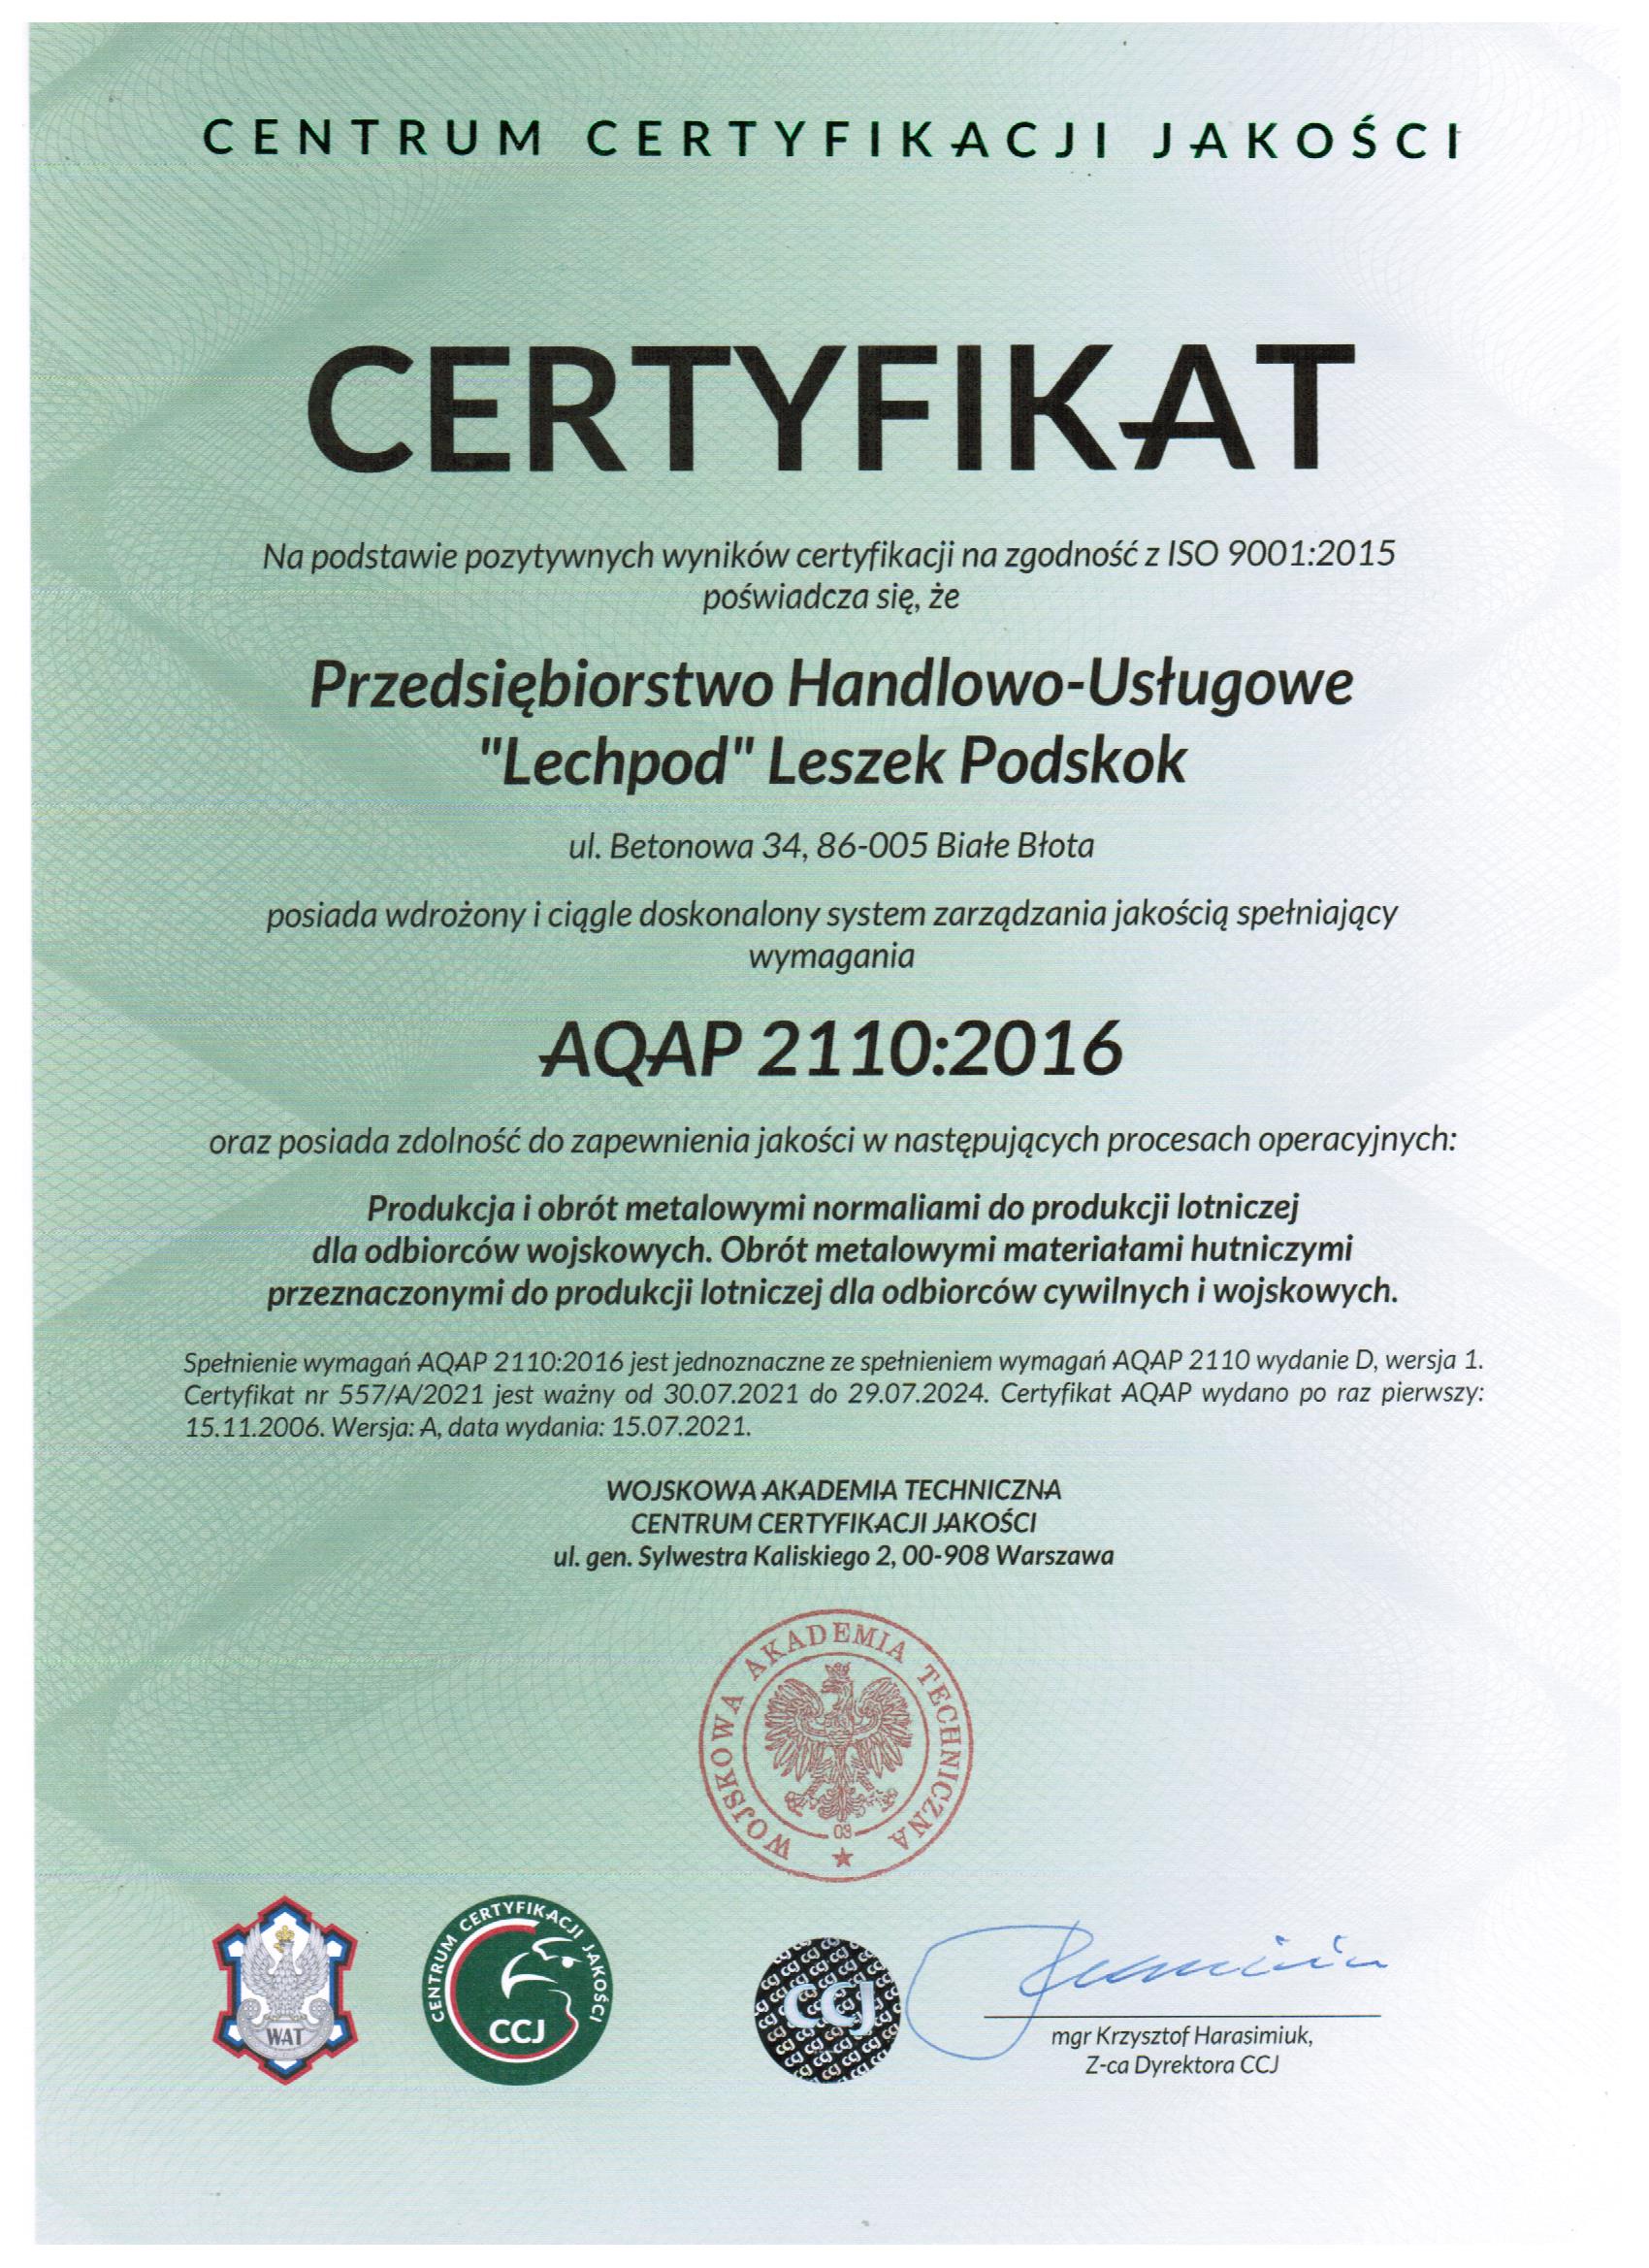 AQAP 2110-2016 z 2021 roku